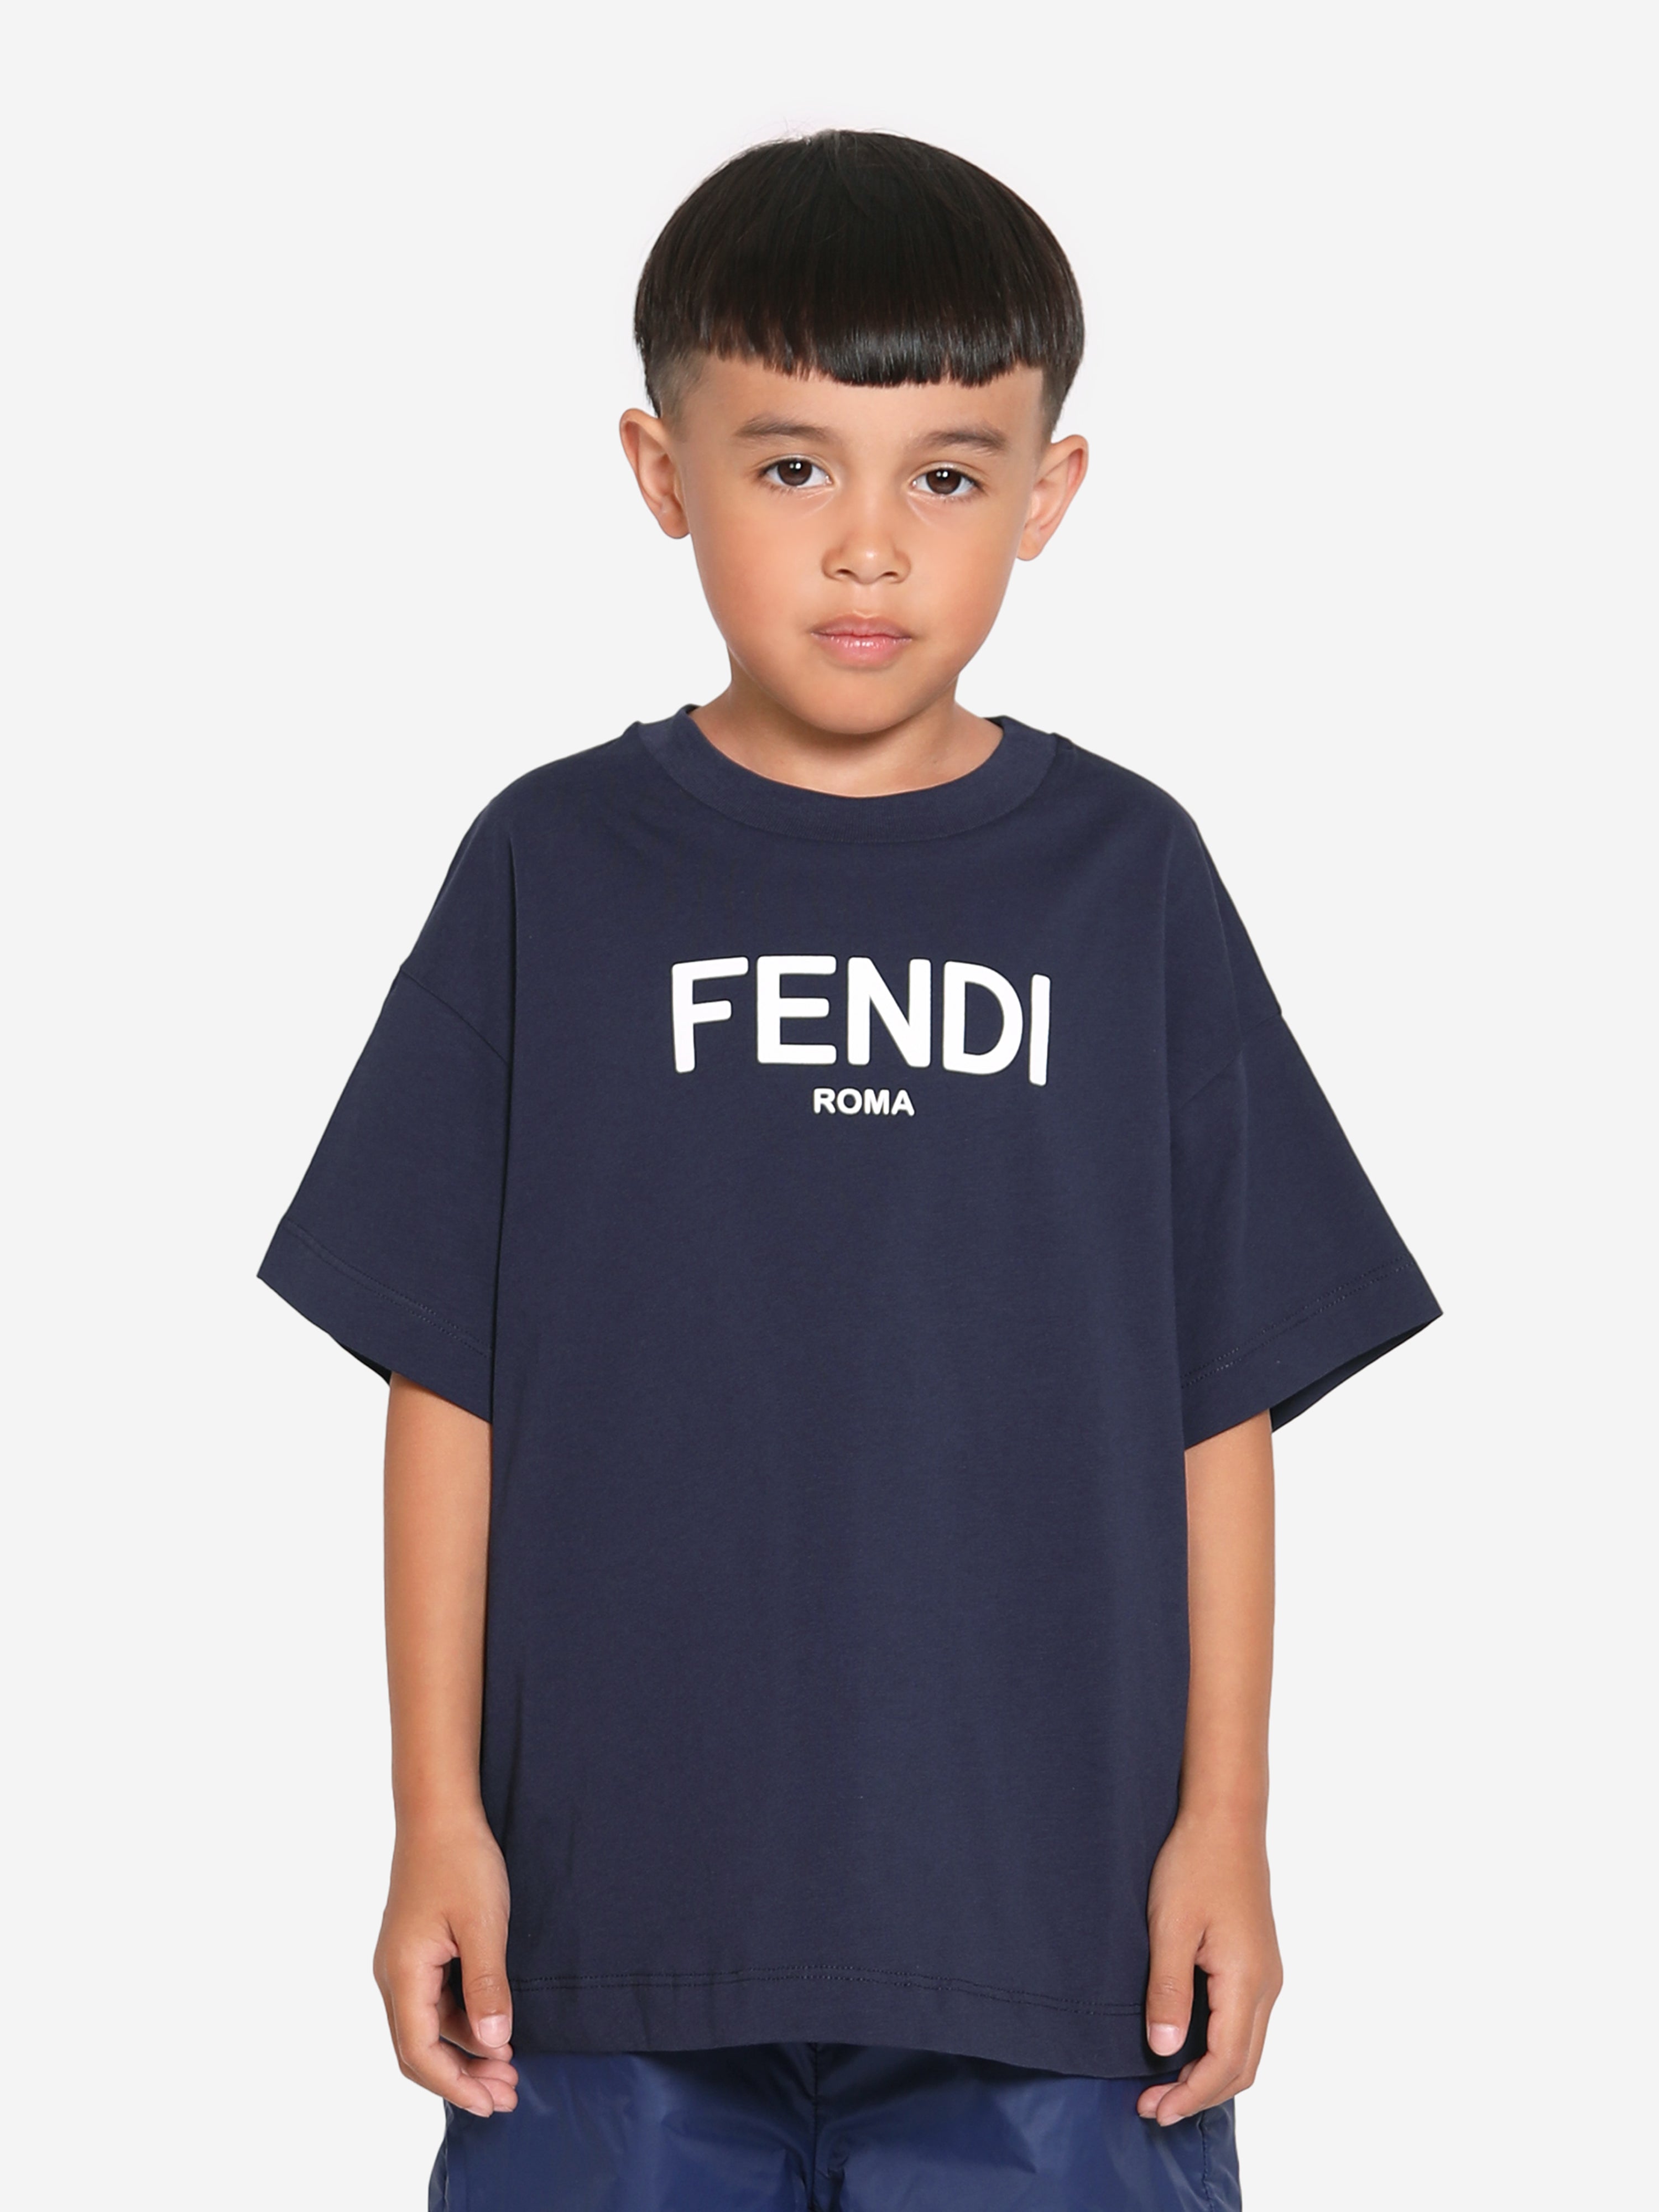 Fendi Kids Boys White Mini Me Spotted Black Orange T-Shirt